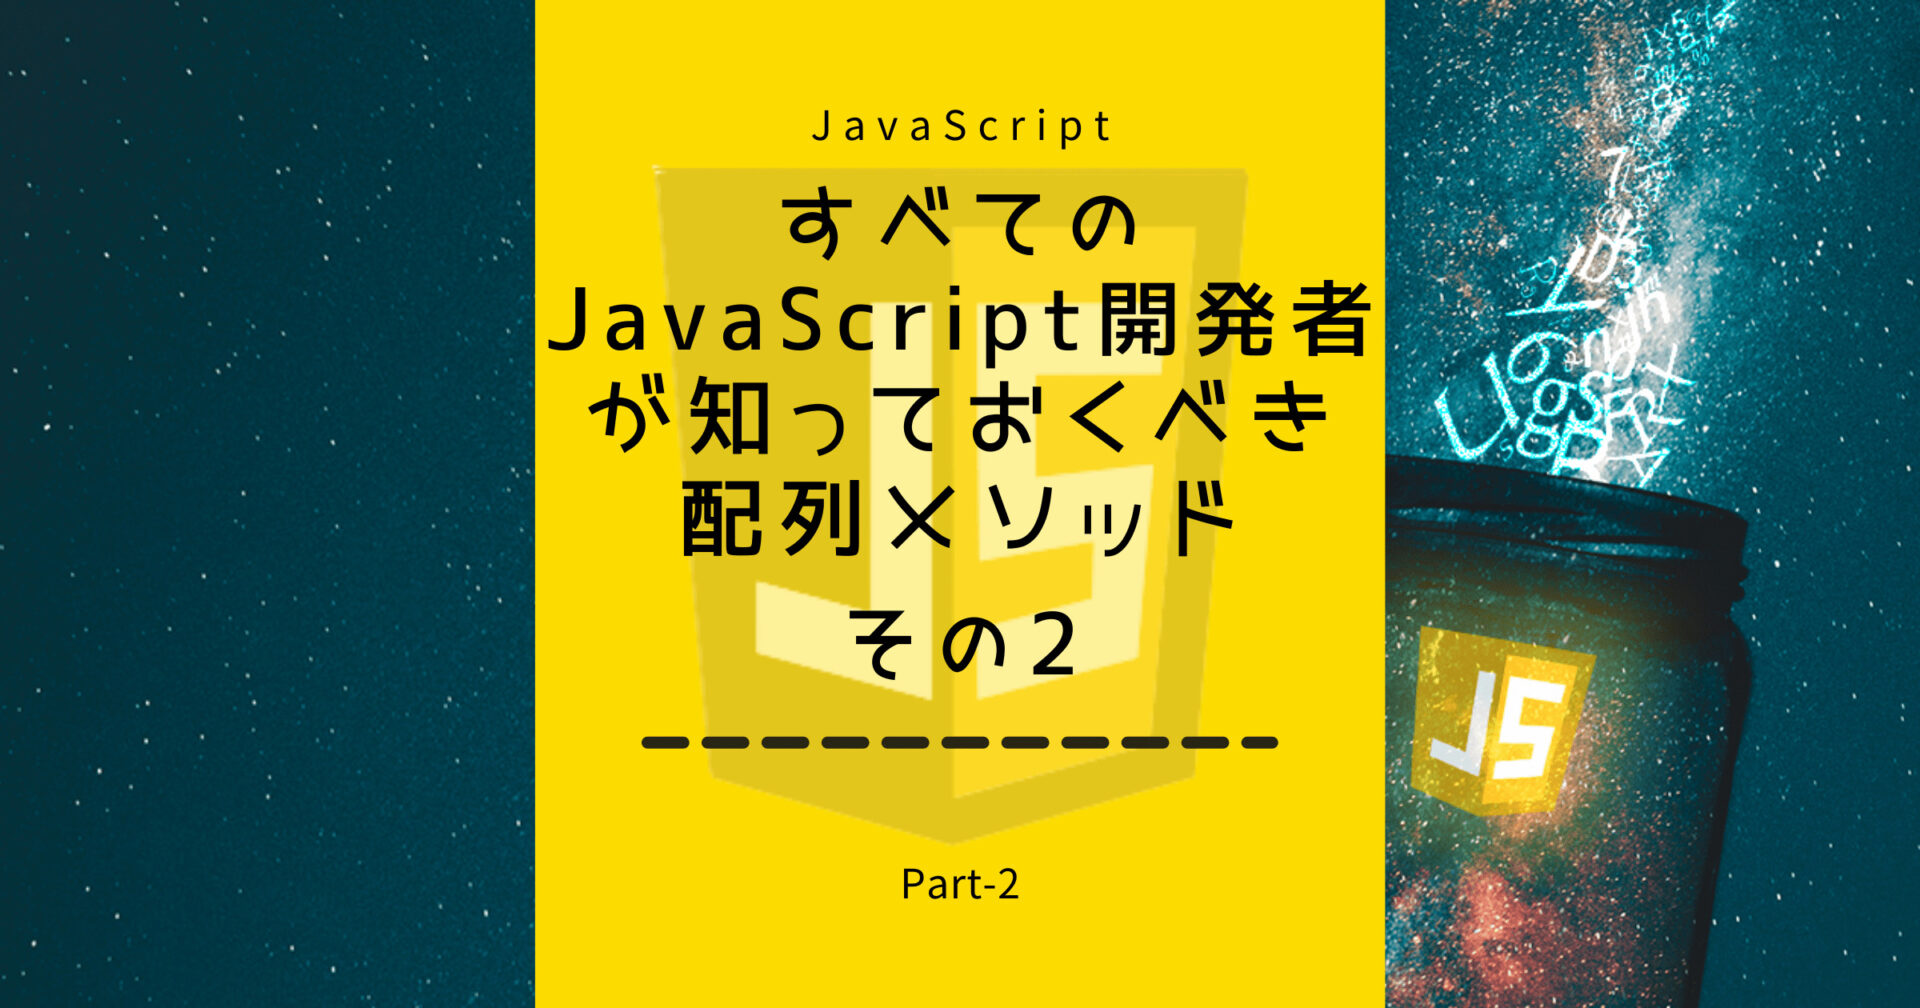 すべてのJavaScript開発者が知っておくべき配列メソッドPart-2